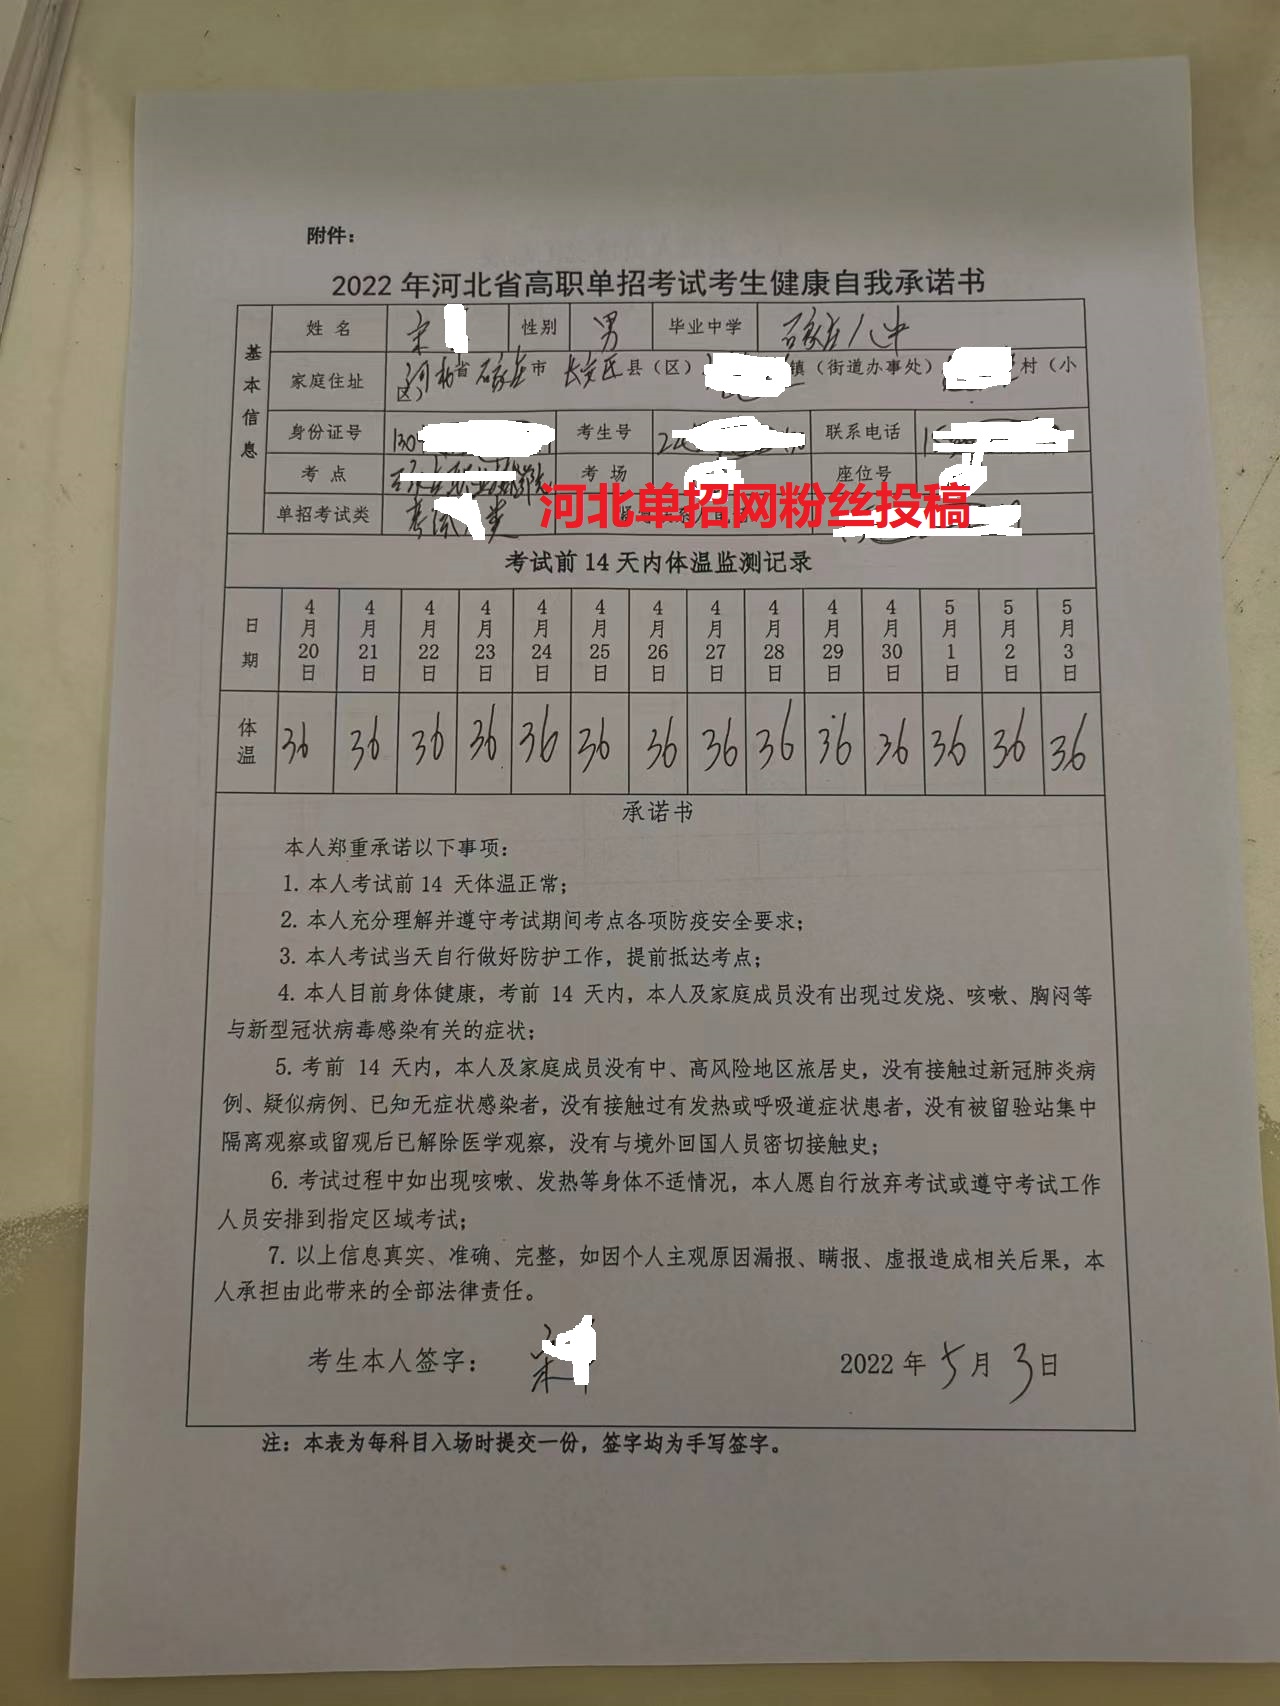 2022年河北省高职单招准考证打印流程图